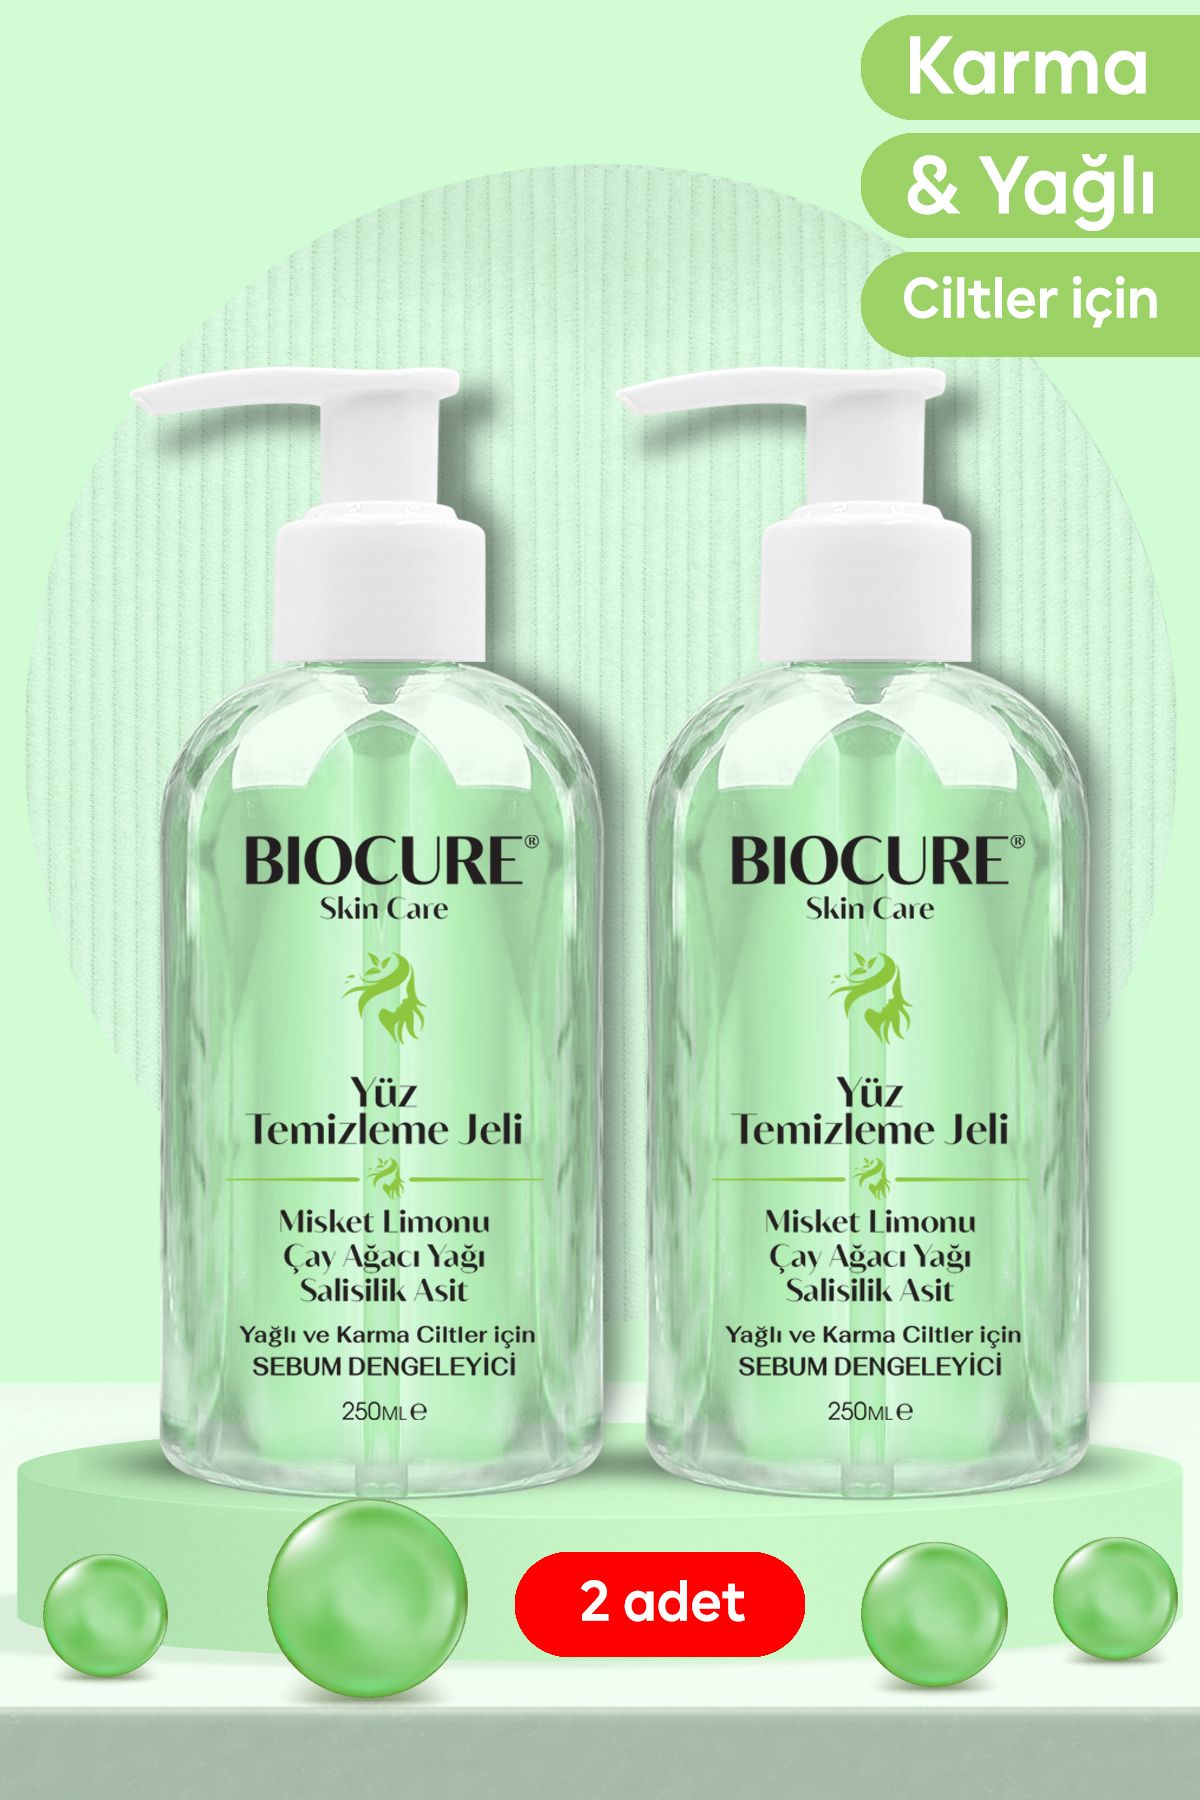 Biocure Yüz Temizleme Jeli Karma ve Yağlı Ciltler için Derinlemesine Temizleyici Salisilik Asit 250mlx2 adet